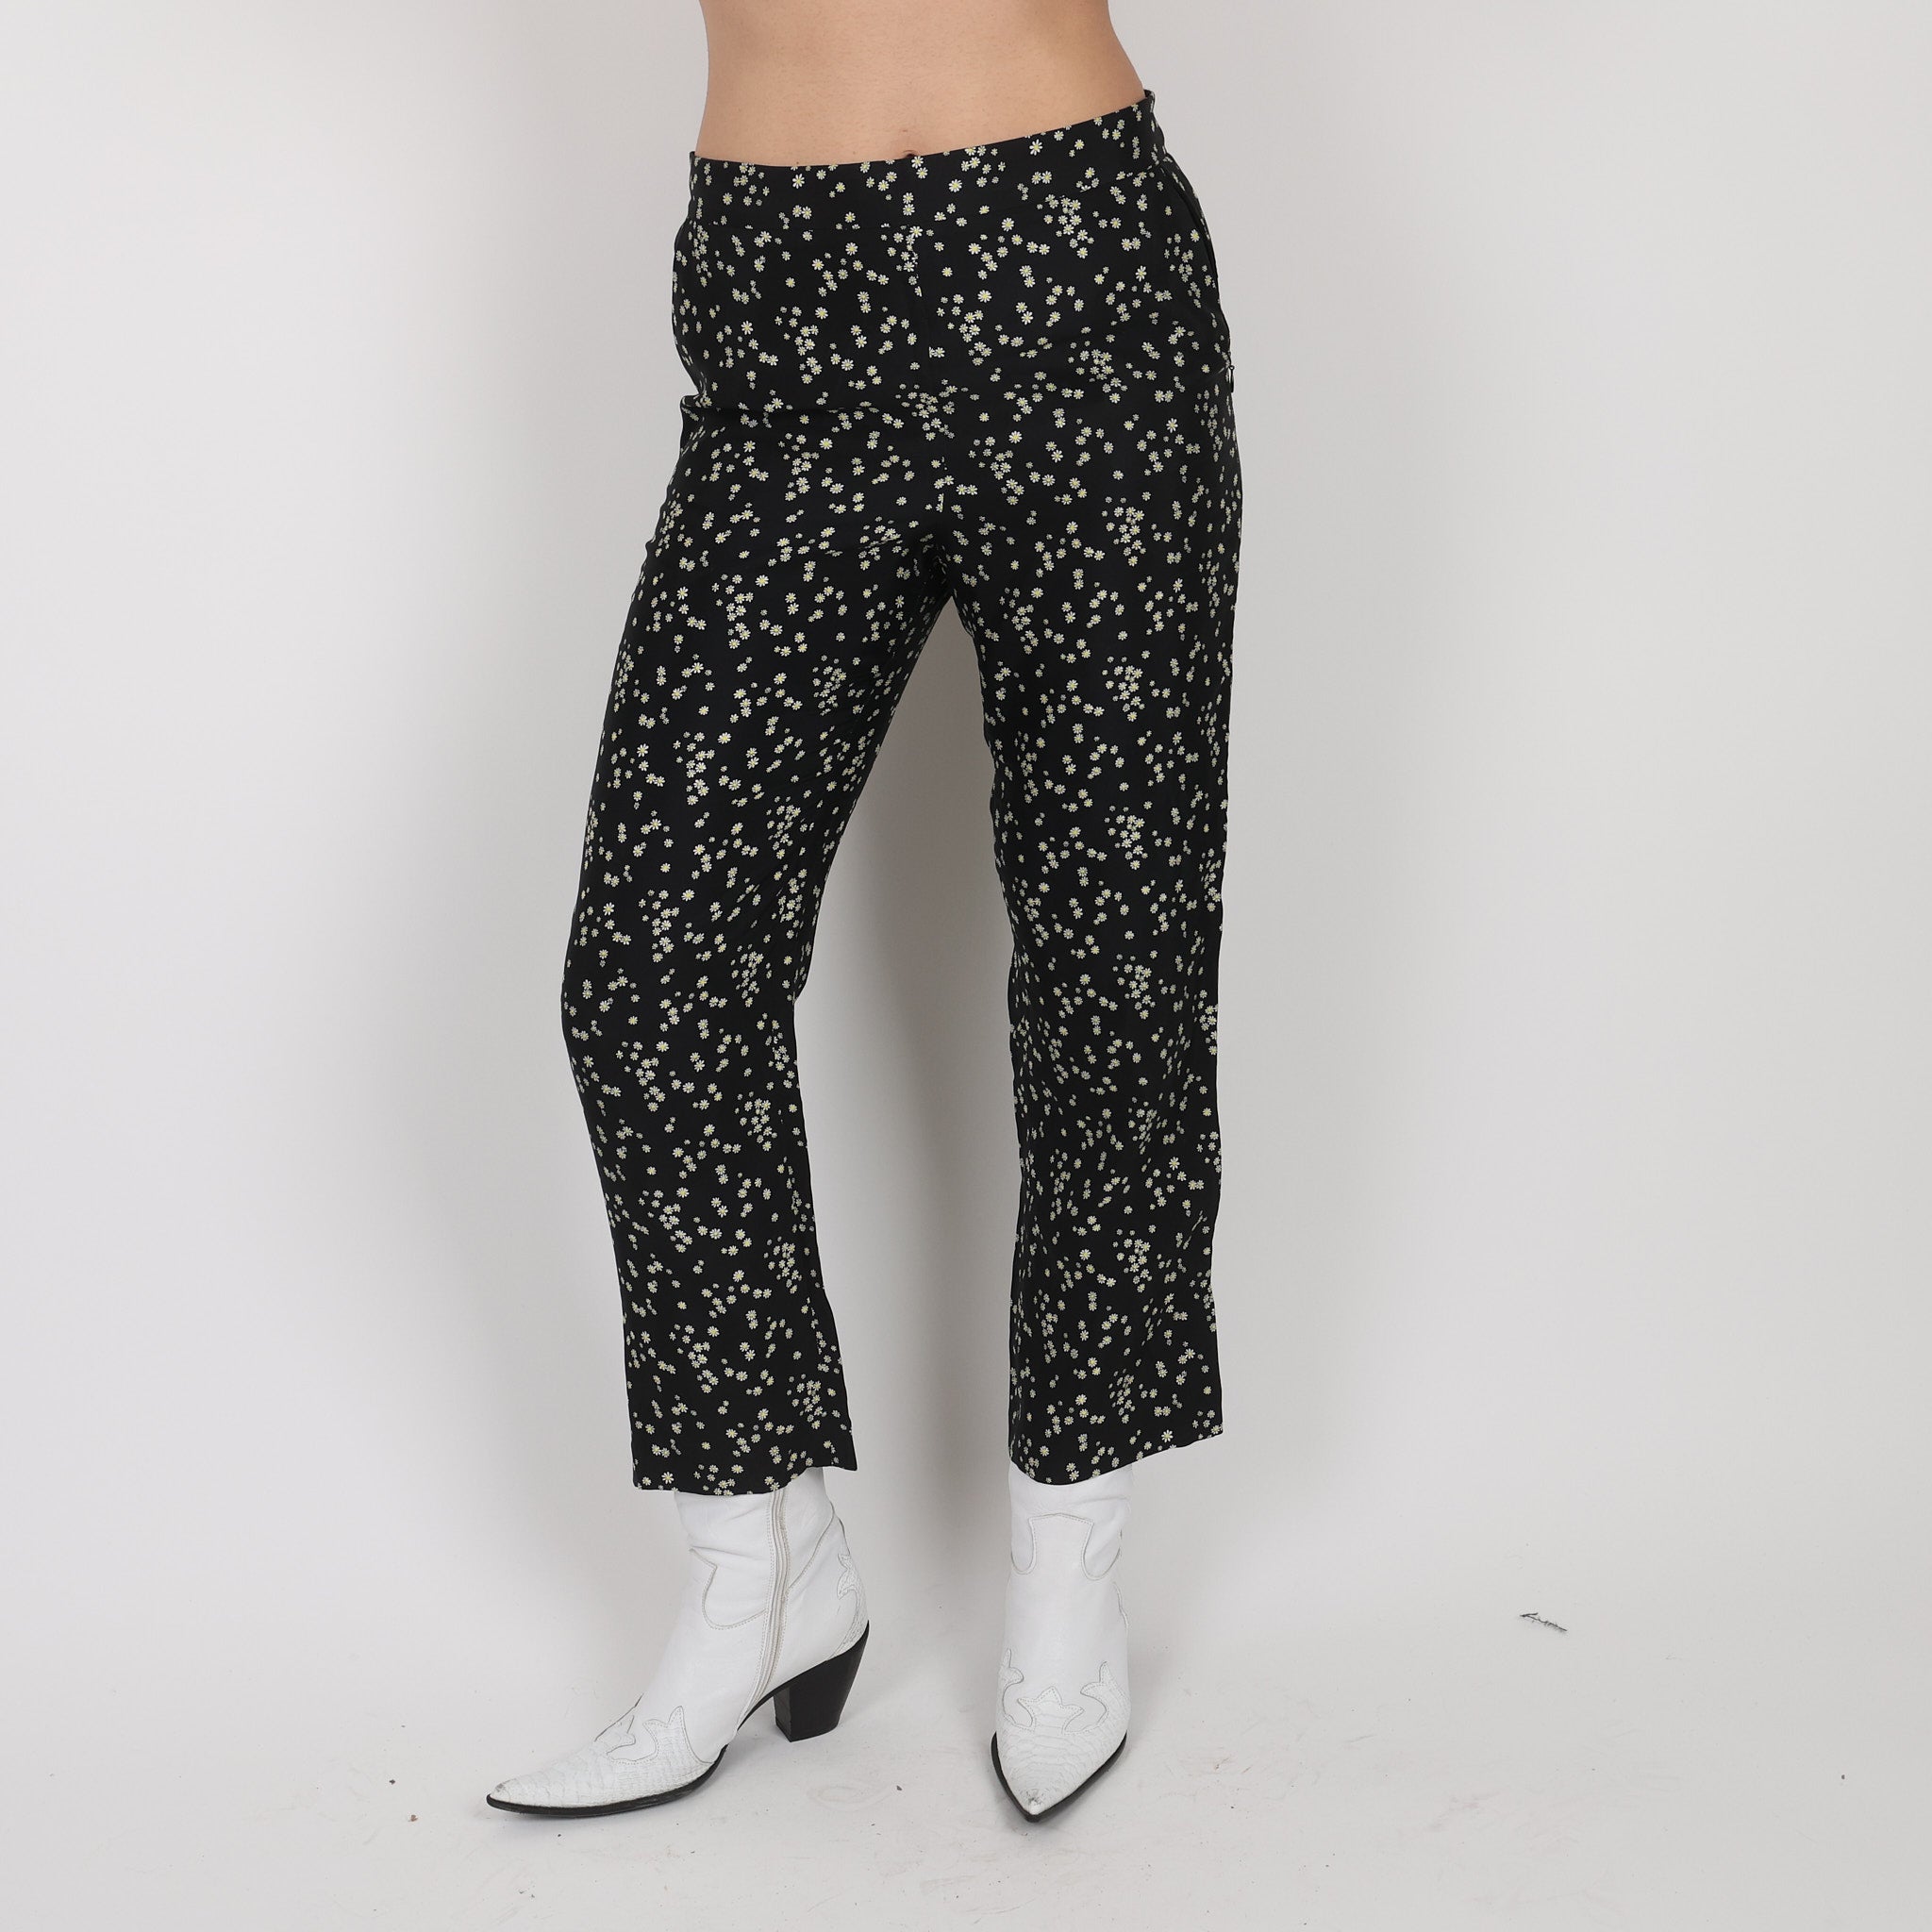 MISS SIXTY Velvet Trousers BlackCharcoal Grey Bootcut Leg UK Size 10 W28   eBay